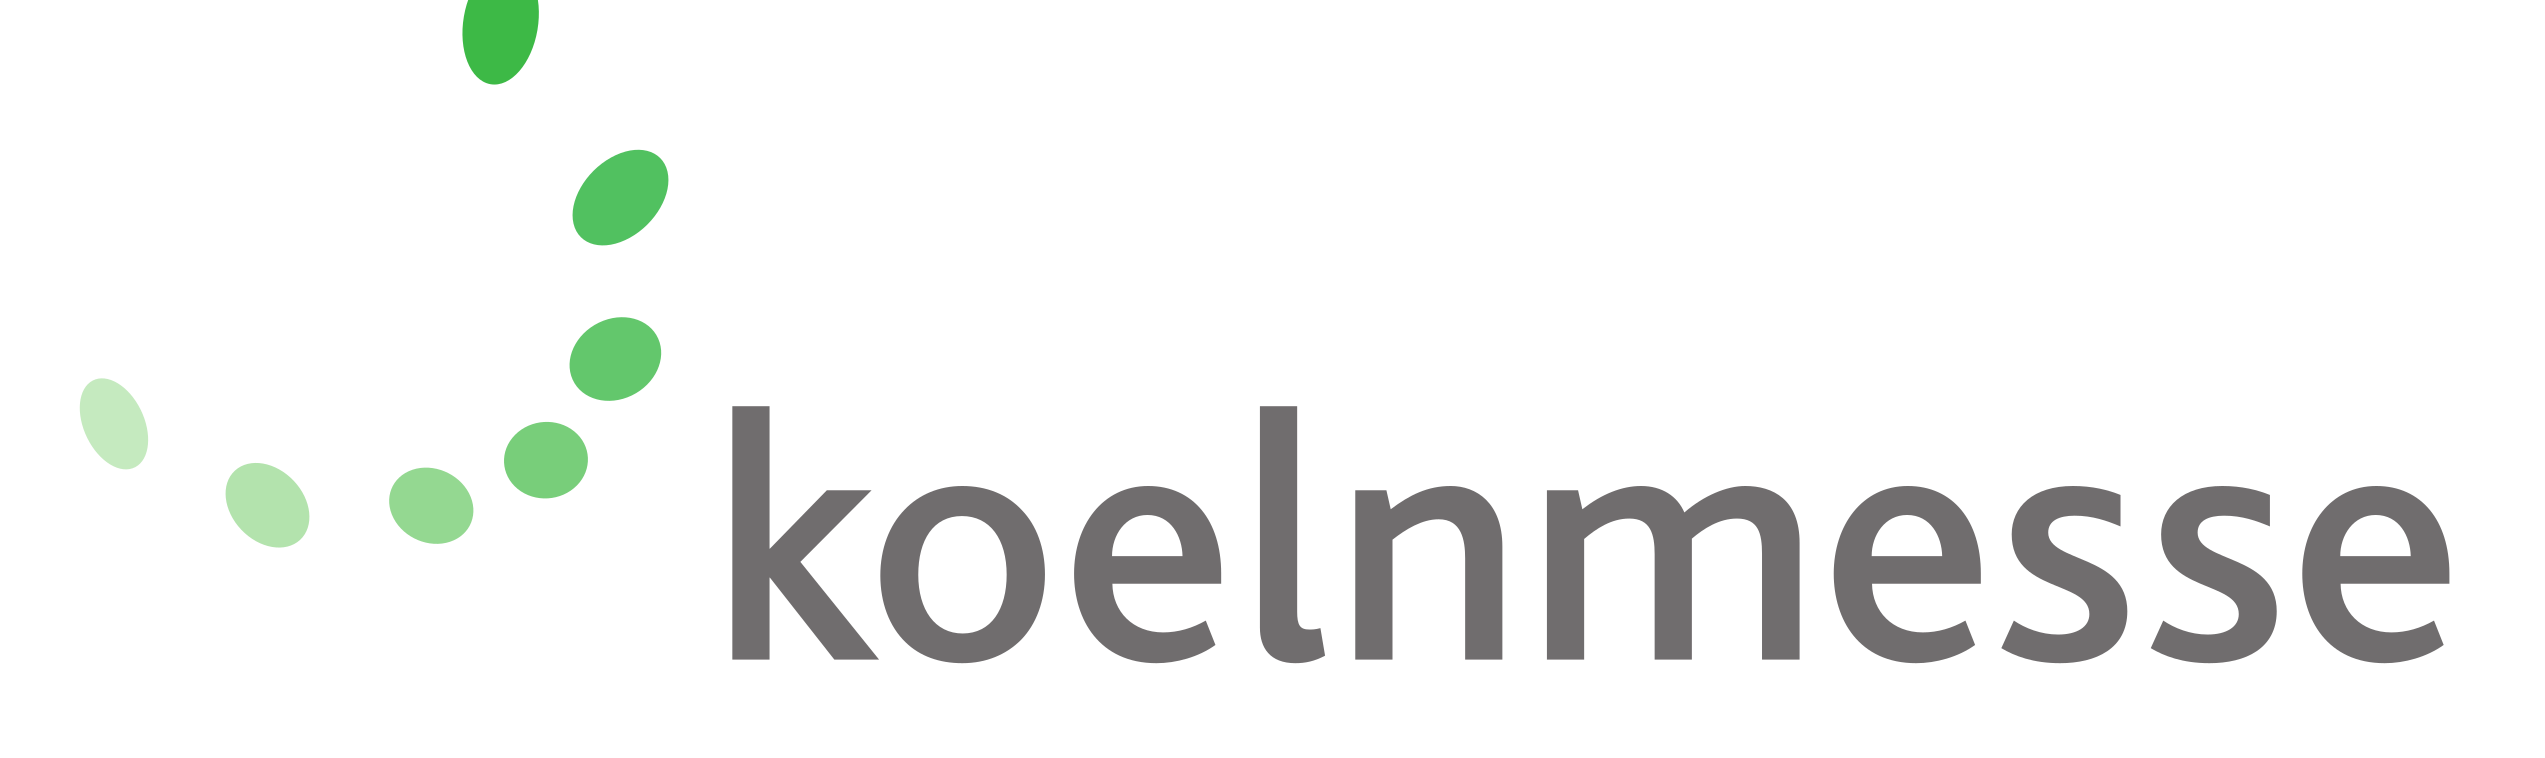 Koelnmesse_Logo.svg.png